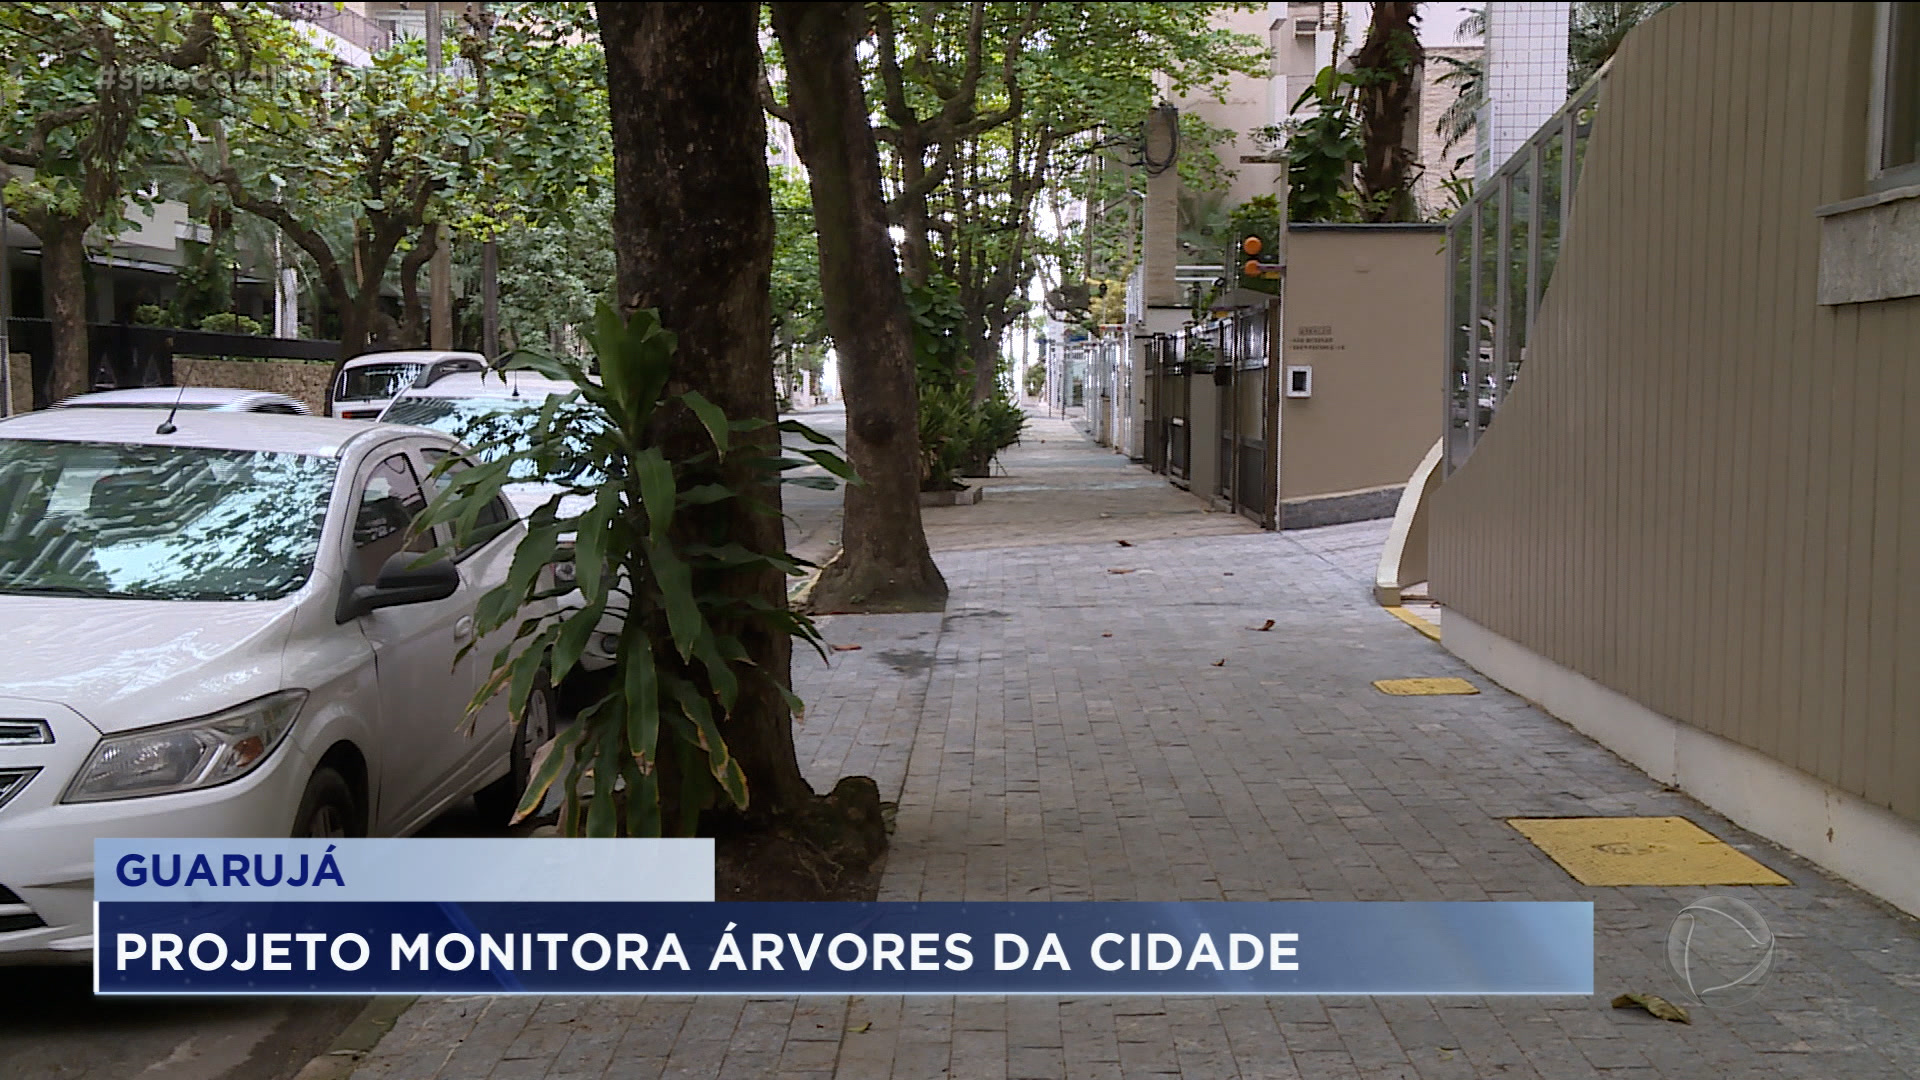 Vídeo: Projeto cadastra e monitora árvores em Guarujá